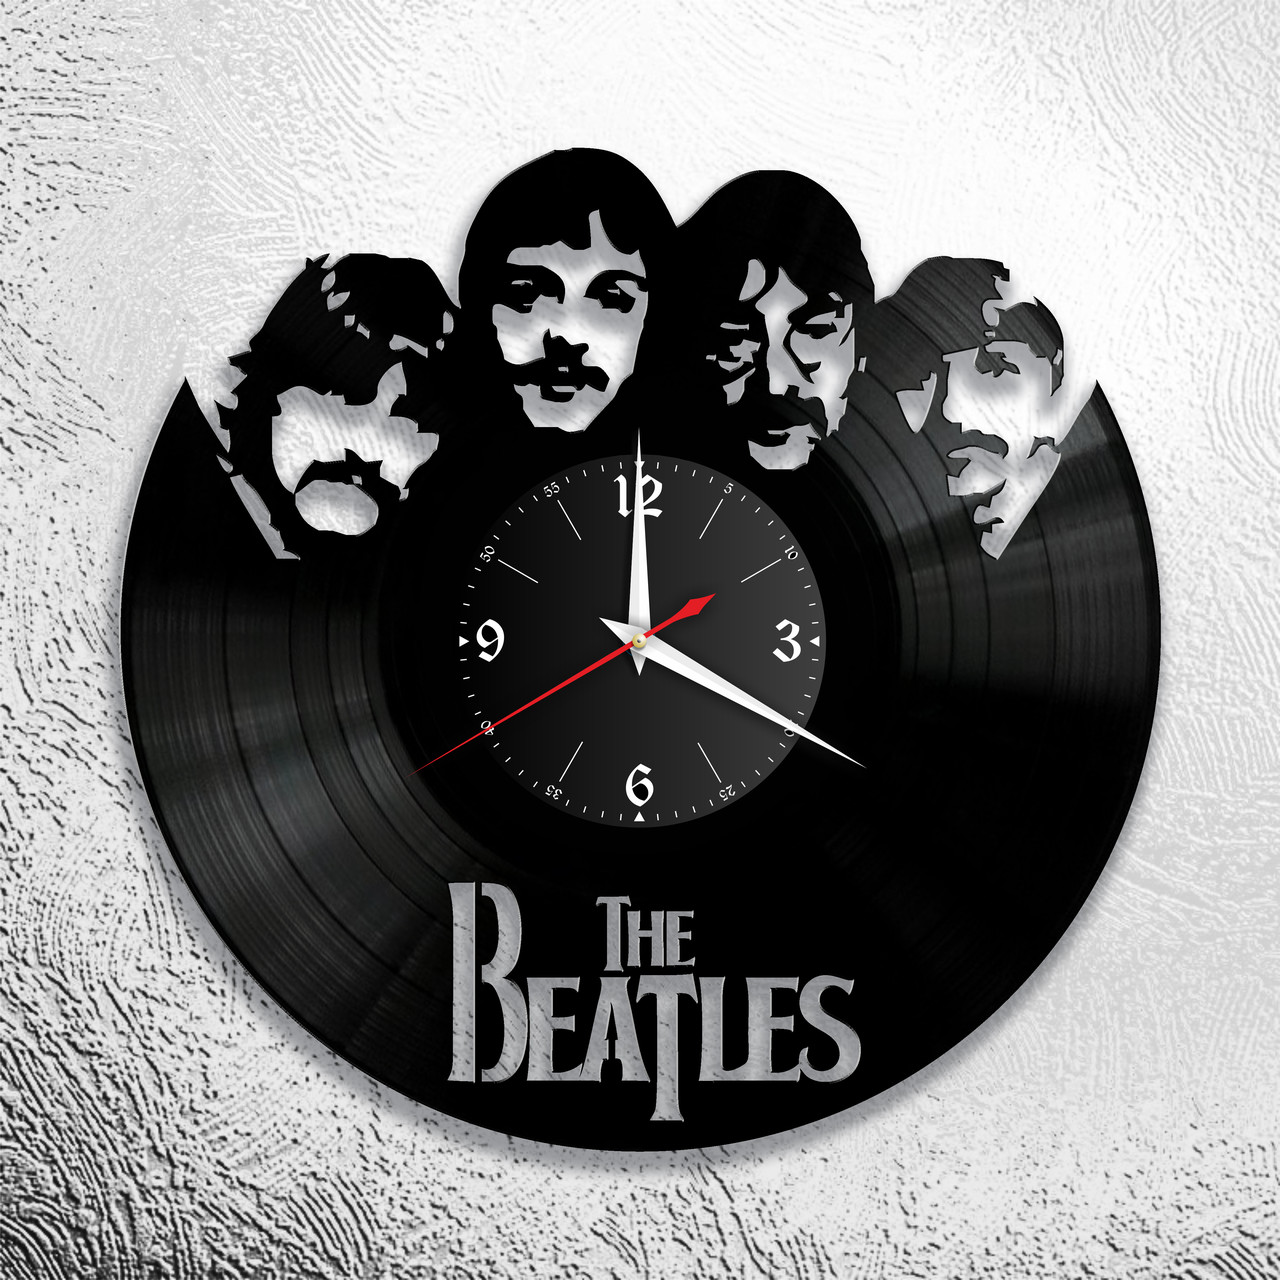 Оригинальные часы из виниловых пластинок "Битлз" версия 4, фото 1